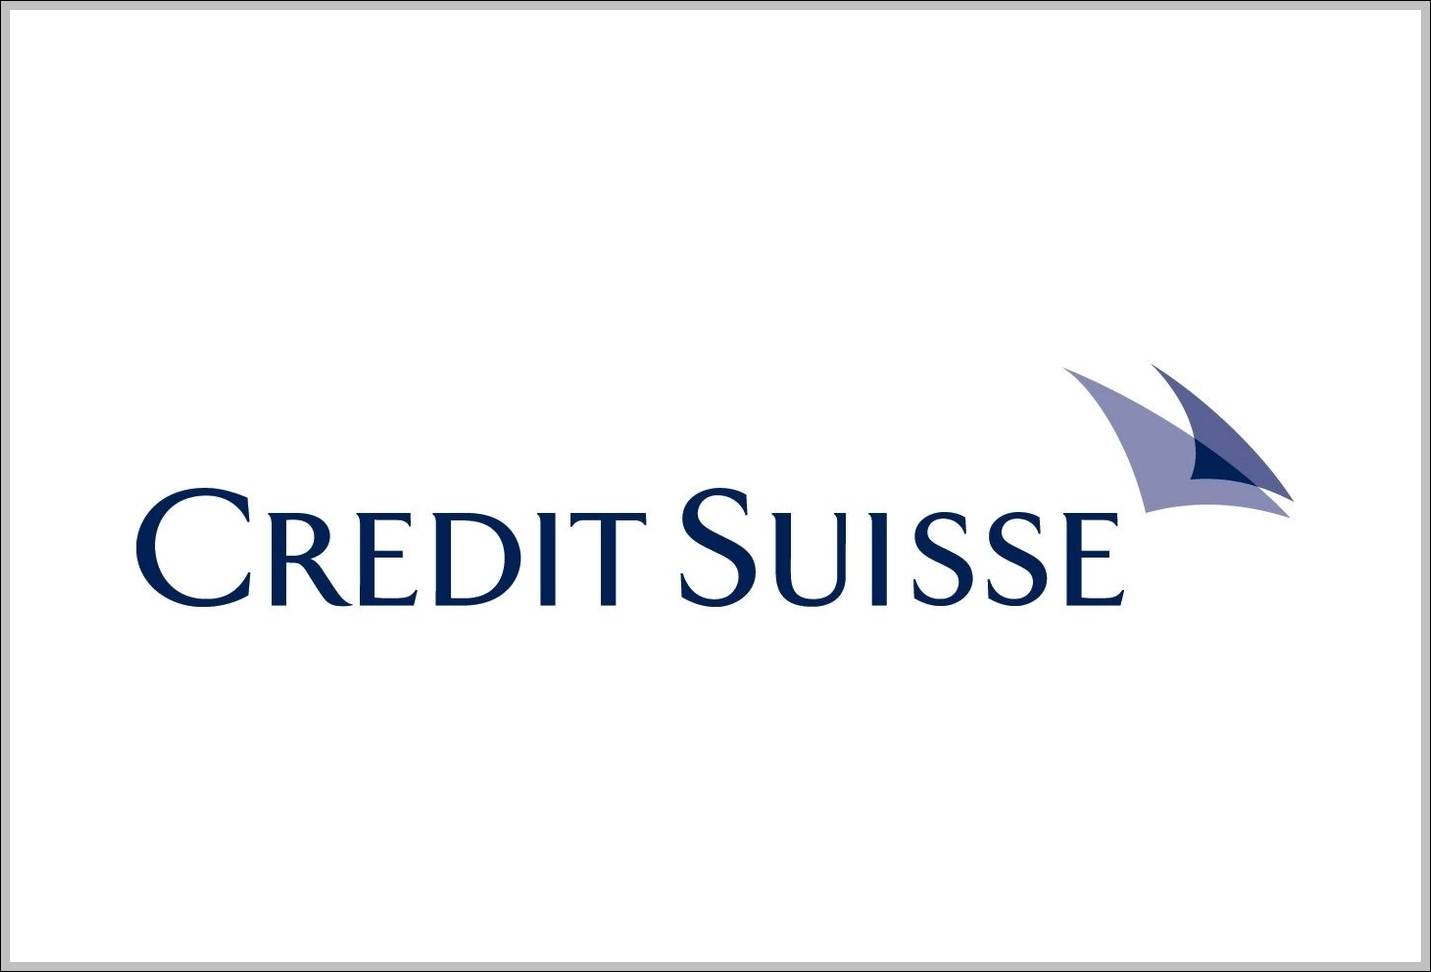 Credit Suisse logo overlap